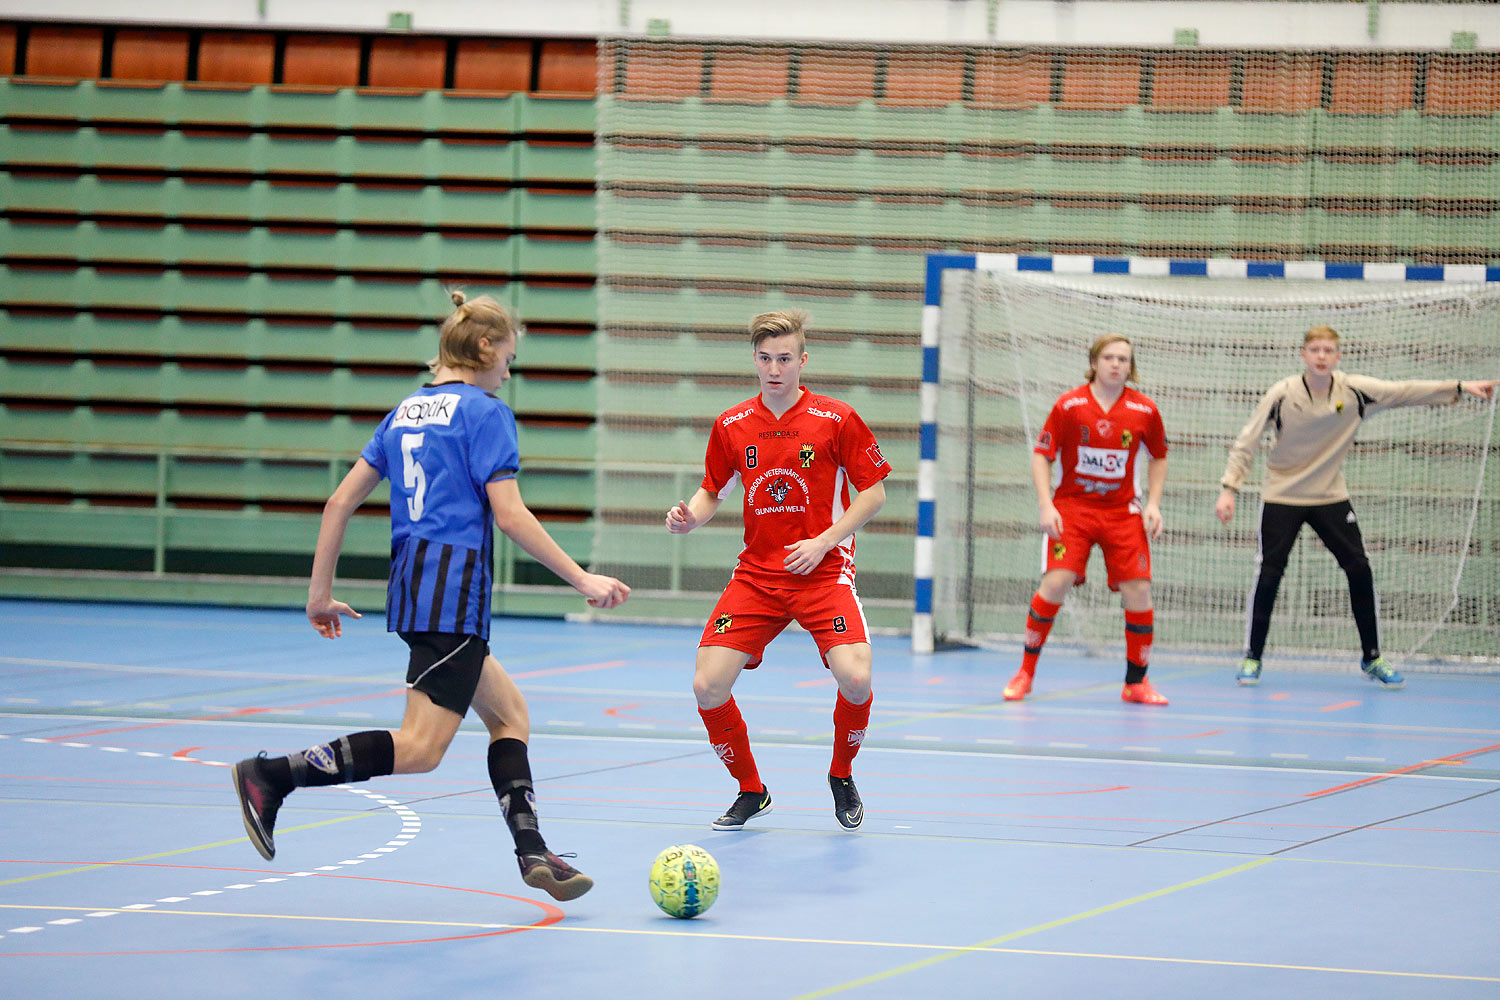 Skövde Futsalcup Herrjuniorer Ulricehamns IFK-Töreboda IK,herr,Arena Skövde,Skövde,Sverige,Skövde Futsalcup 2016,Futsal,2016,141920